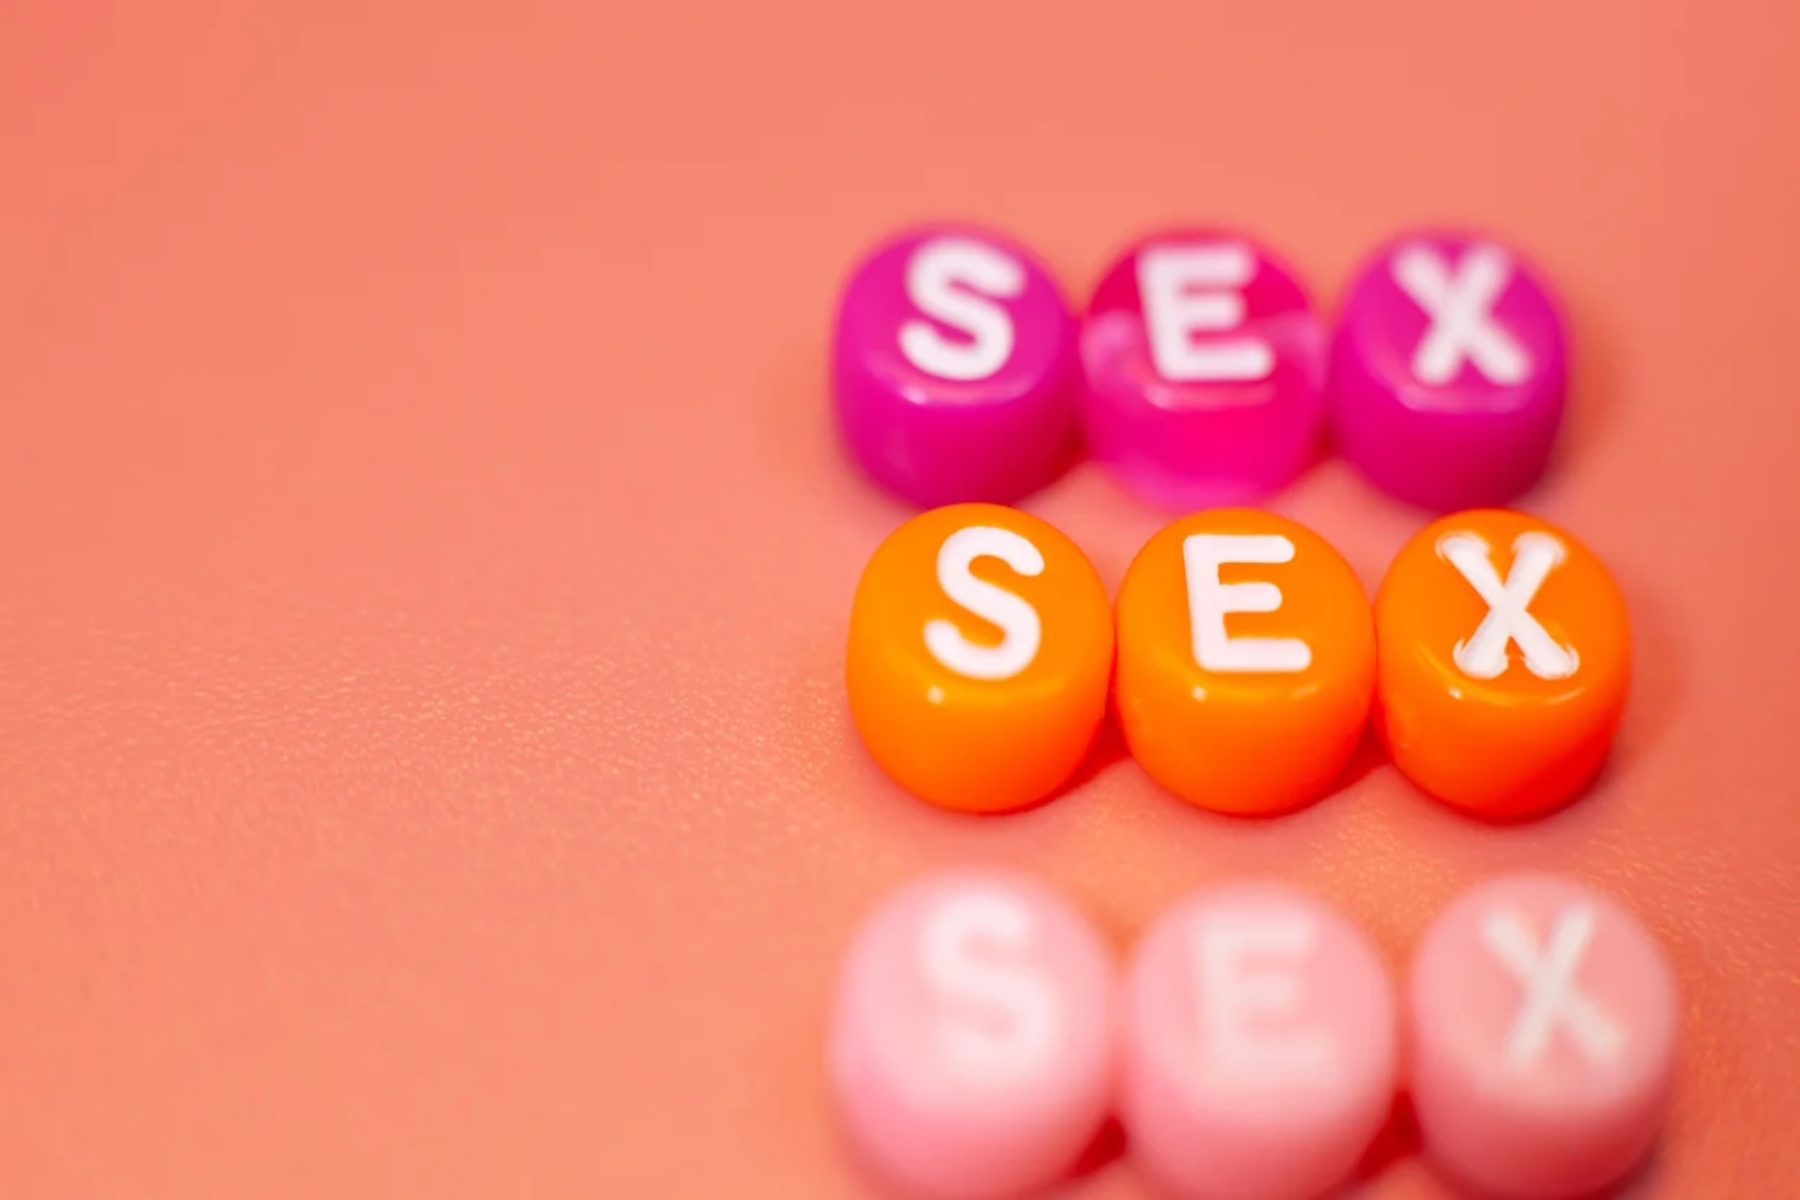 Εθισμός σεξ: Σημάδια και συμπτώματα που δείχνουν ότι είστε εθισμένοι στο σεξ